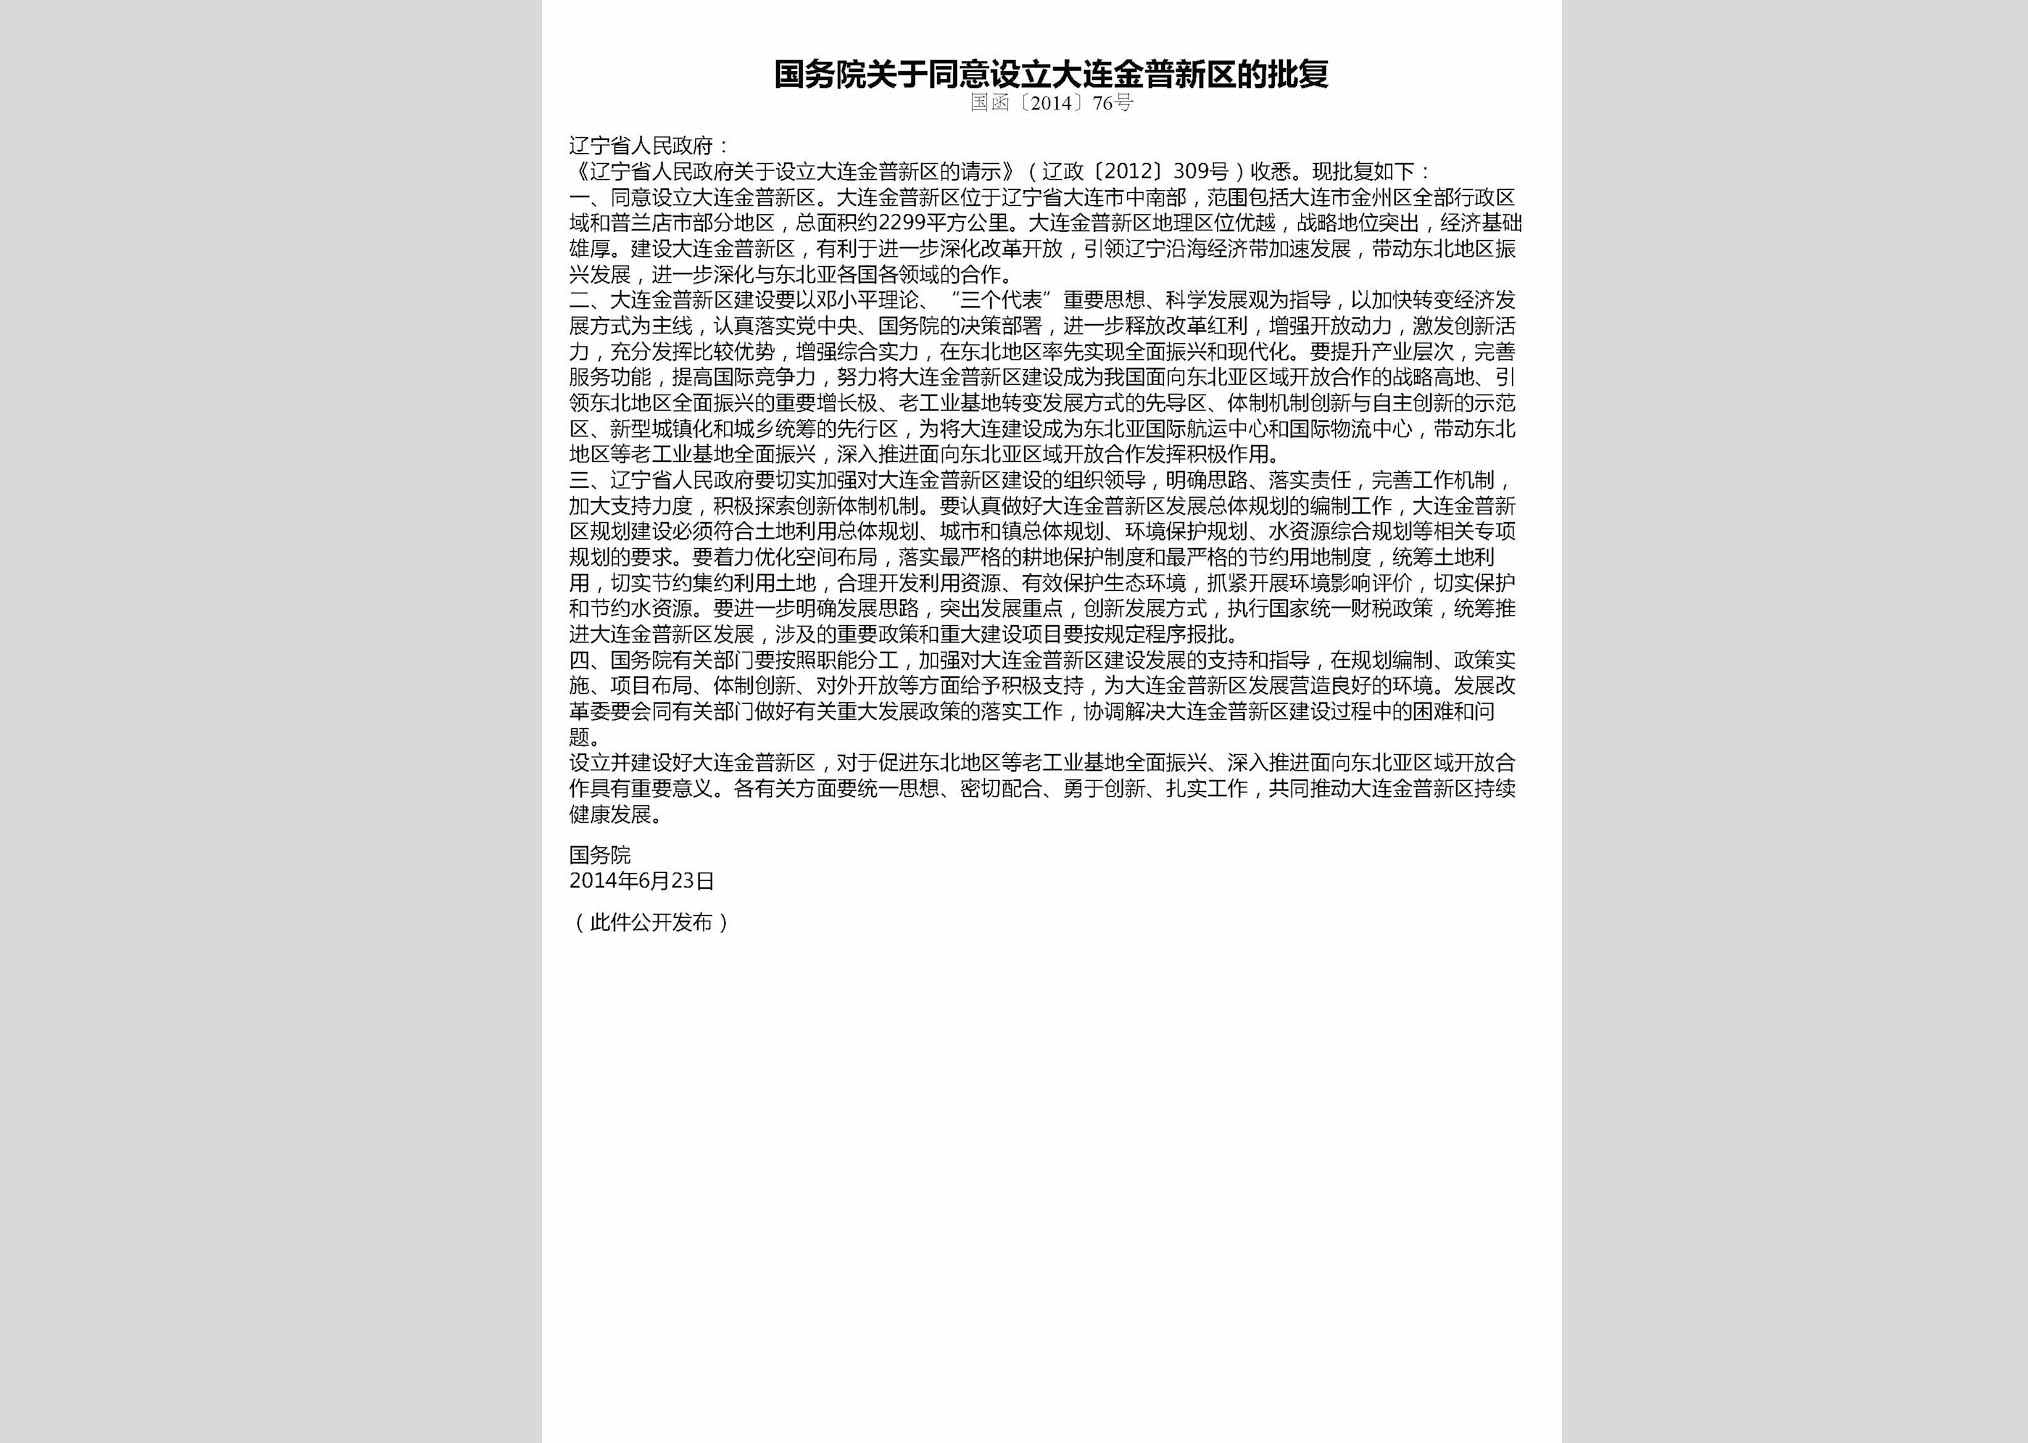 国函[2014]76号：国务院关于同意设立大连金普新区的批复